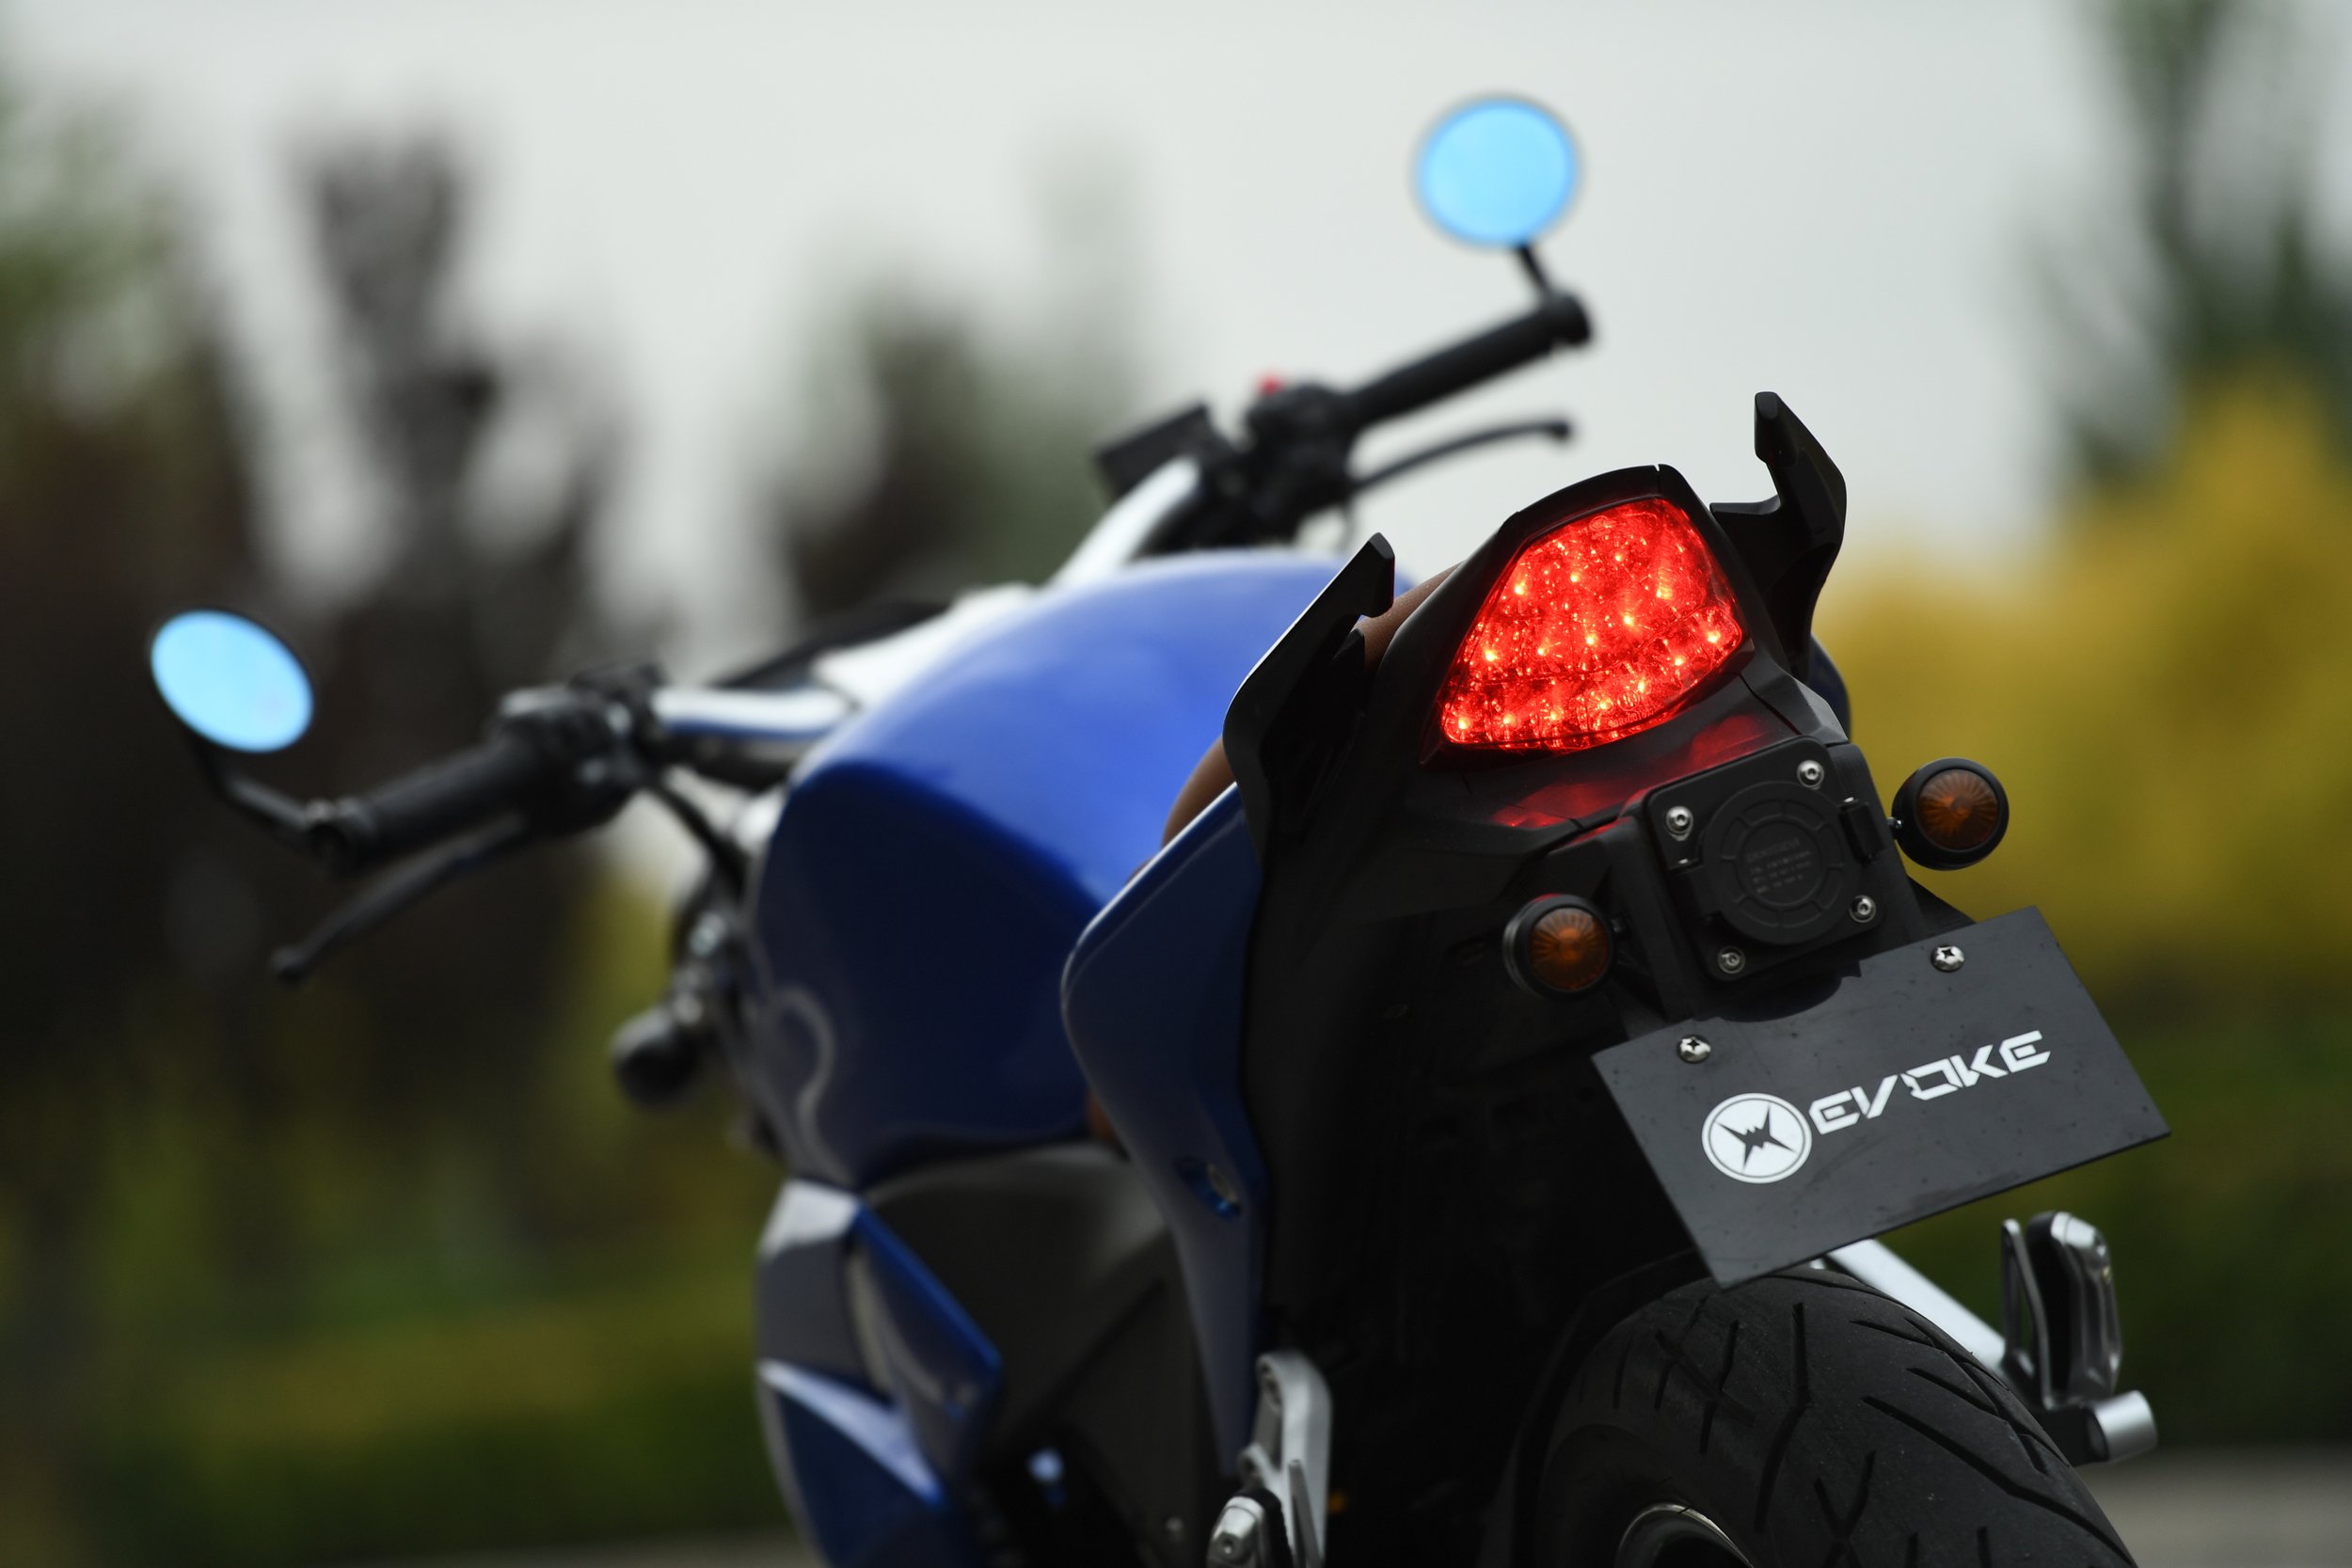 Evoke Electric Motorcycle Oceanic Blue Rearview 